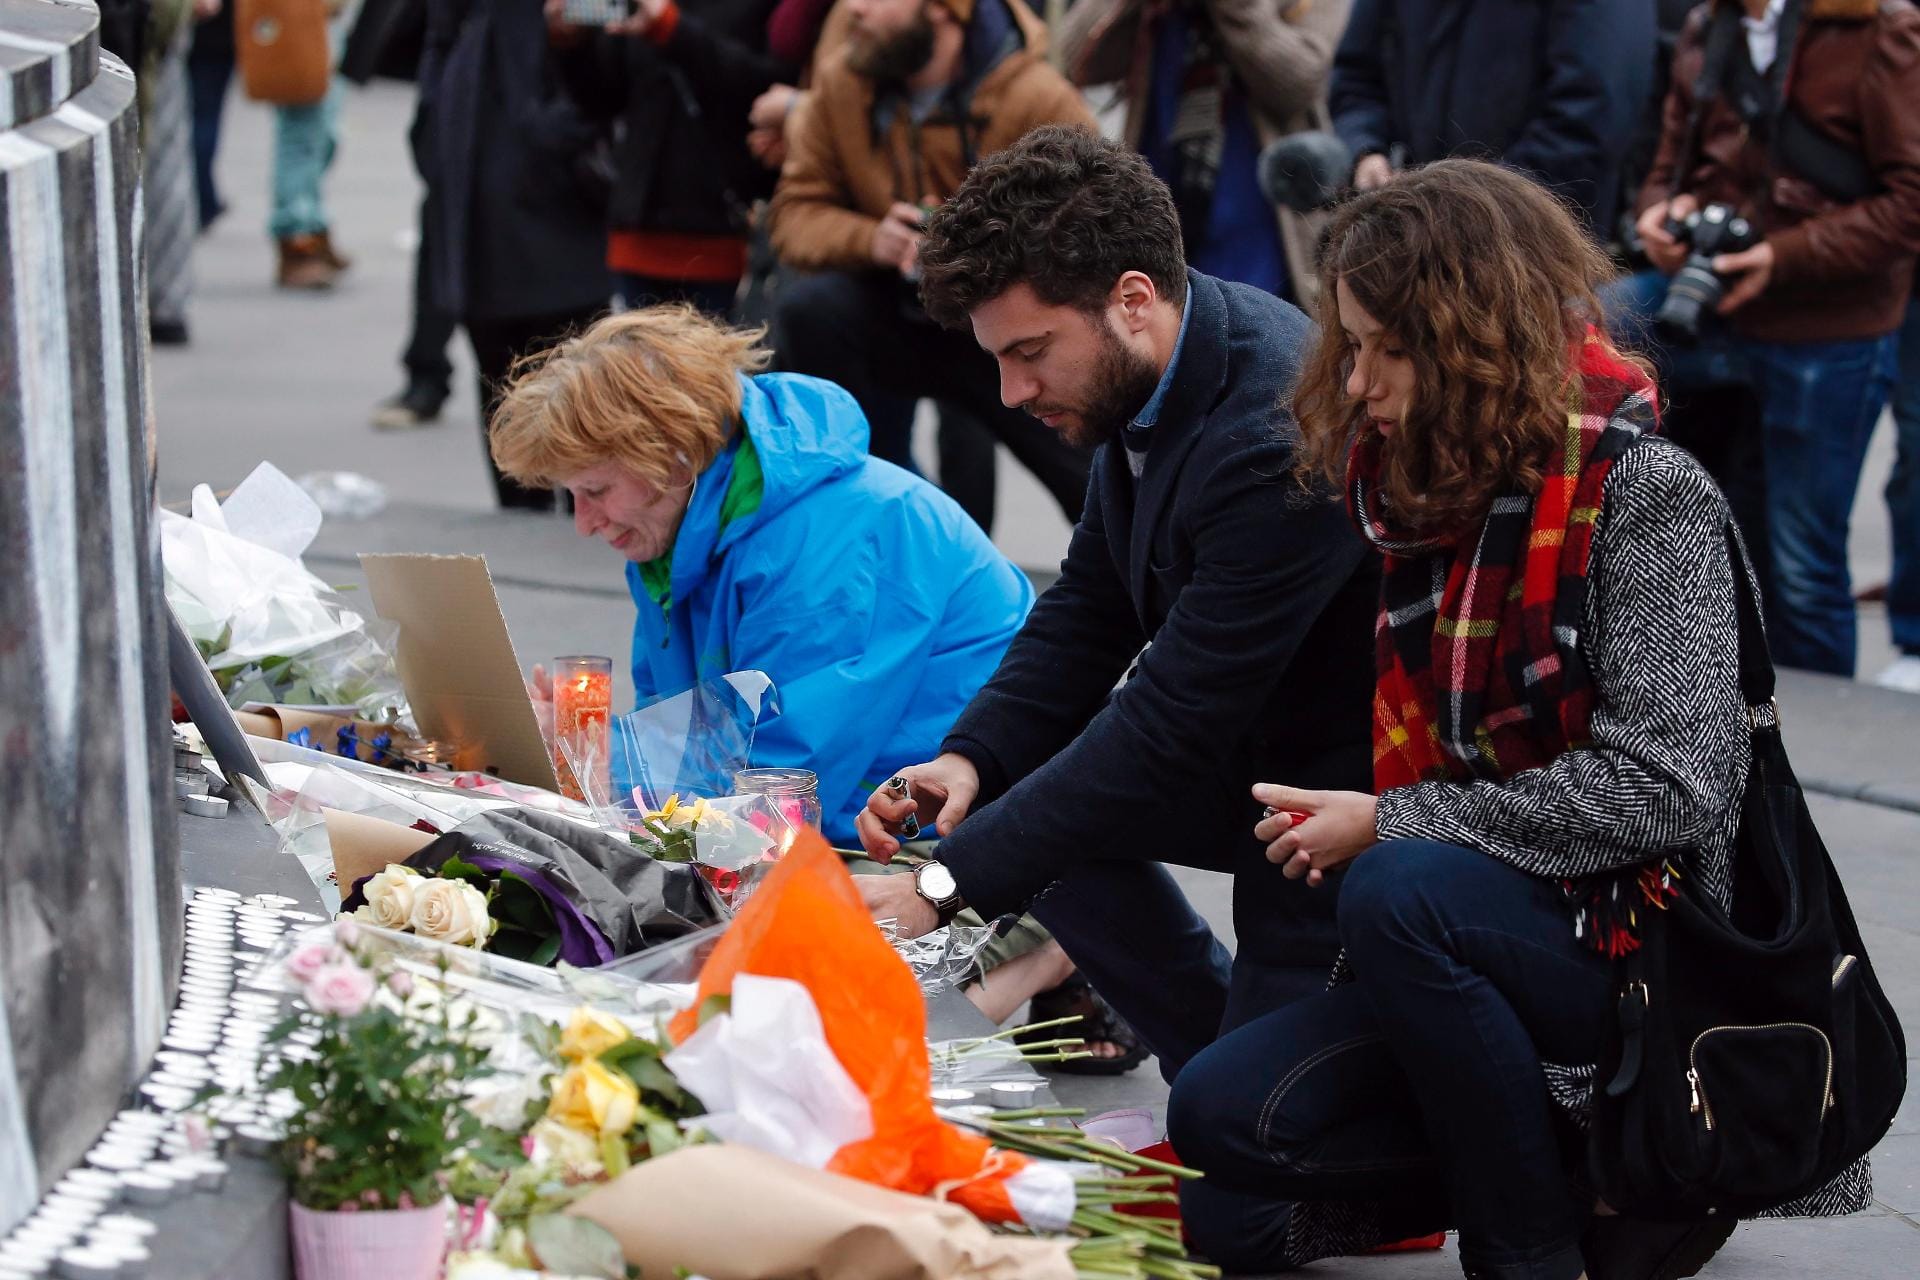 Am Tag nach den schrecklichen Terroranschlägen in Paris herrscht Trauer und Entsetzen in der Stadt. Am Platz der Republik gedenken Menschen zum Teil unter Tränen den Opfern. Bei den Anschlägen kamen nach jüngsten Angaben mindestens 128 Menschen ums Leben. Mindestens 360 wurden verletzt.